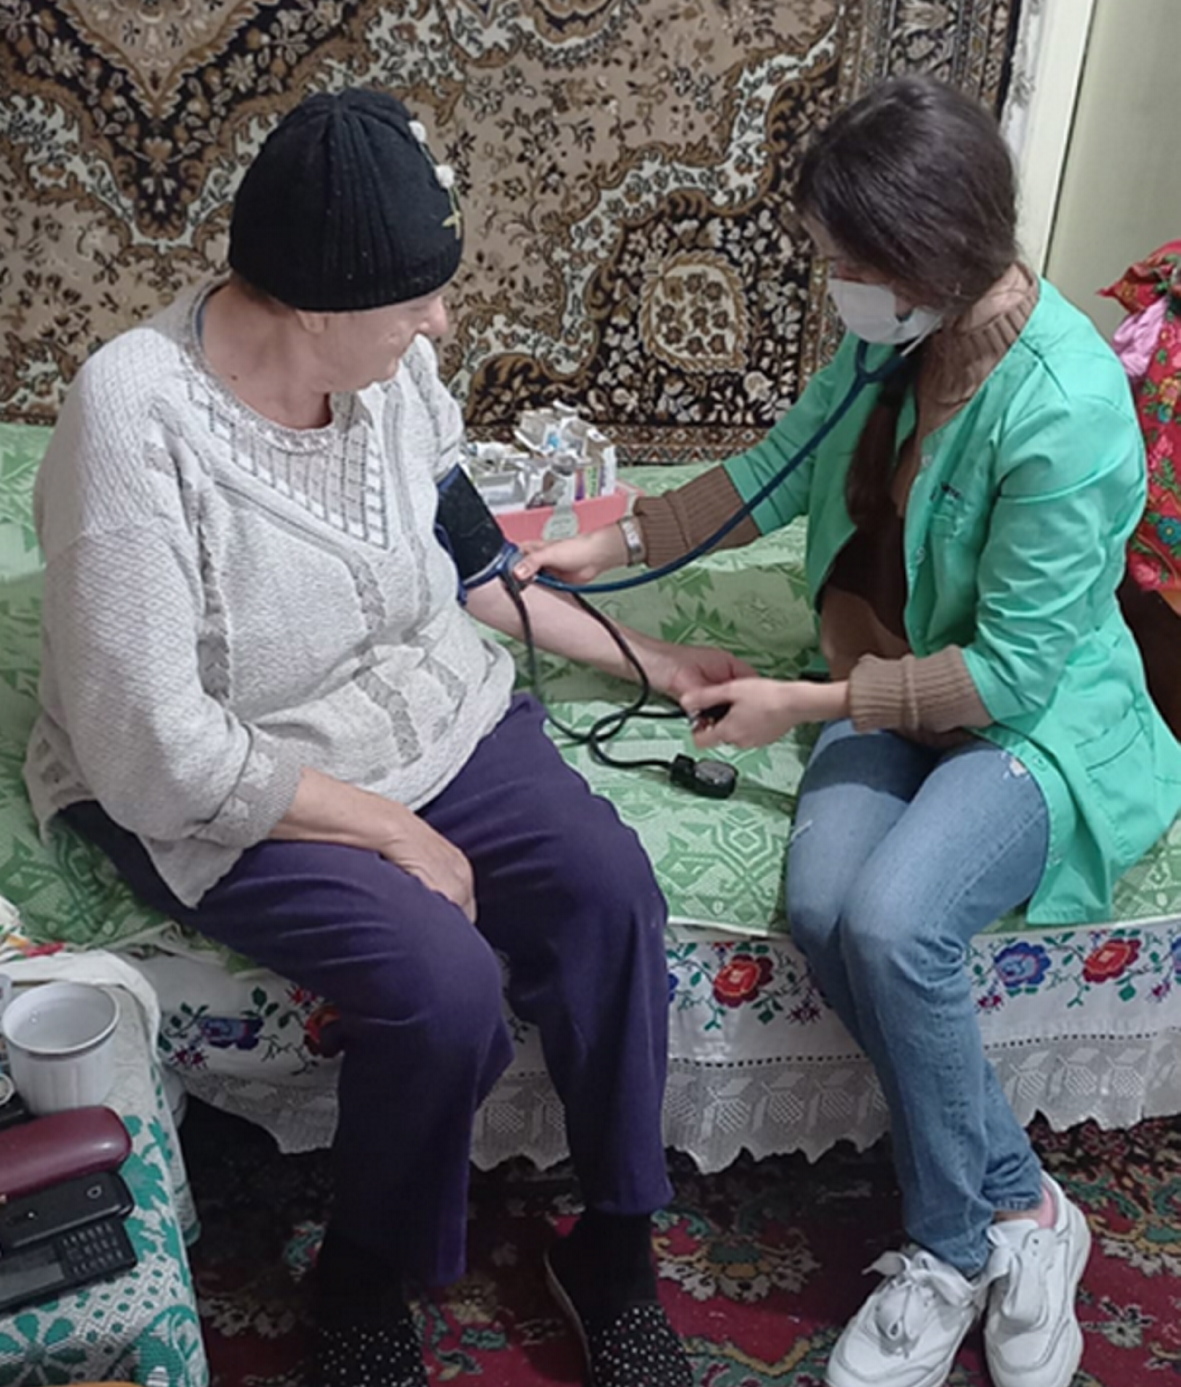 Кожен візит до лікаря для жителів села дає небезпідставні надії швидкого позбавлення від недуг. Фото з сайту ildana.tv